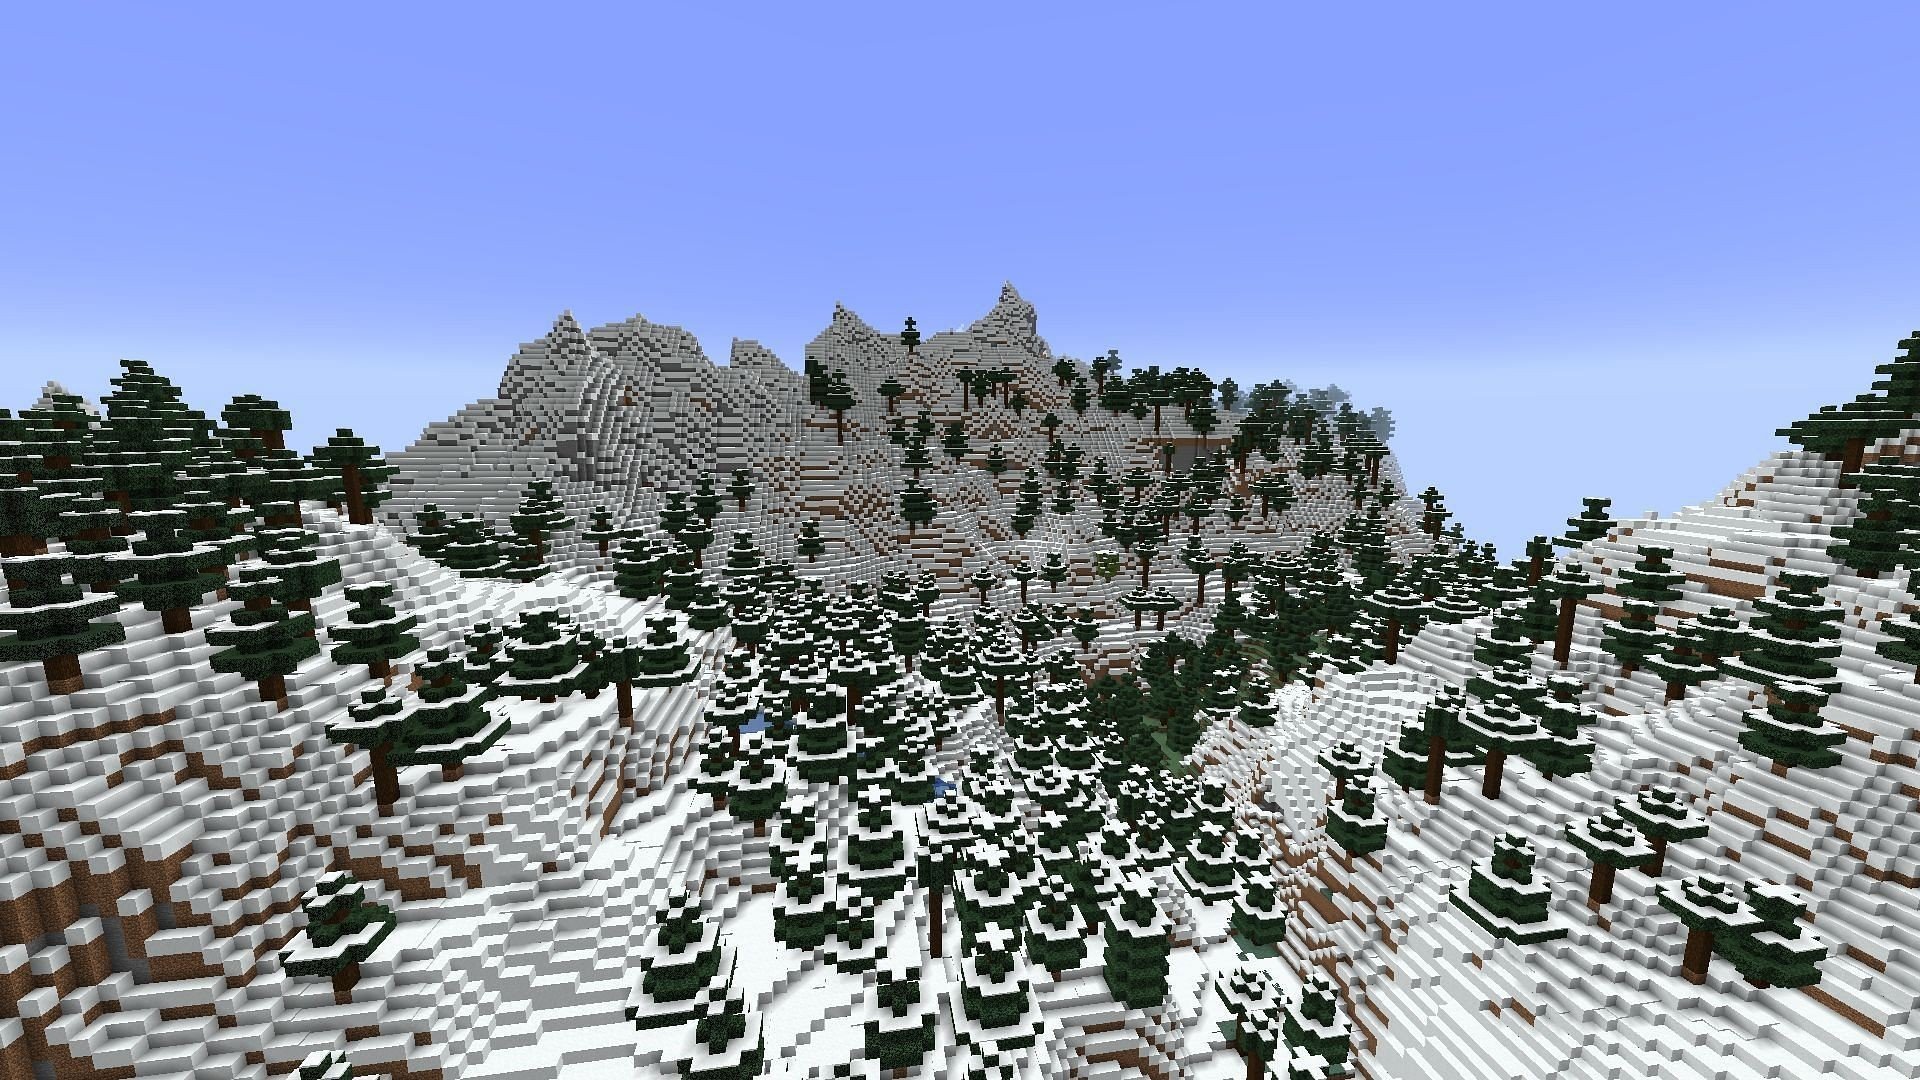 Топ5 самых красивых биомов в Minecraft